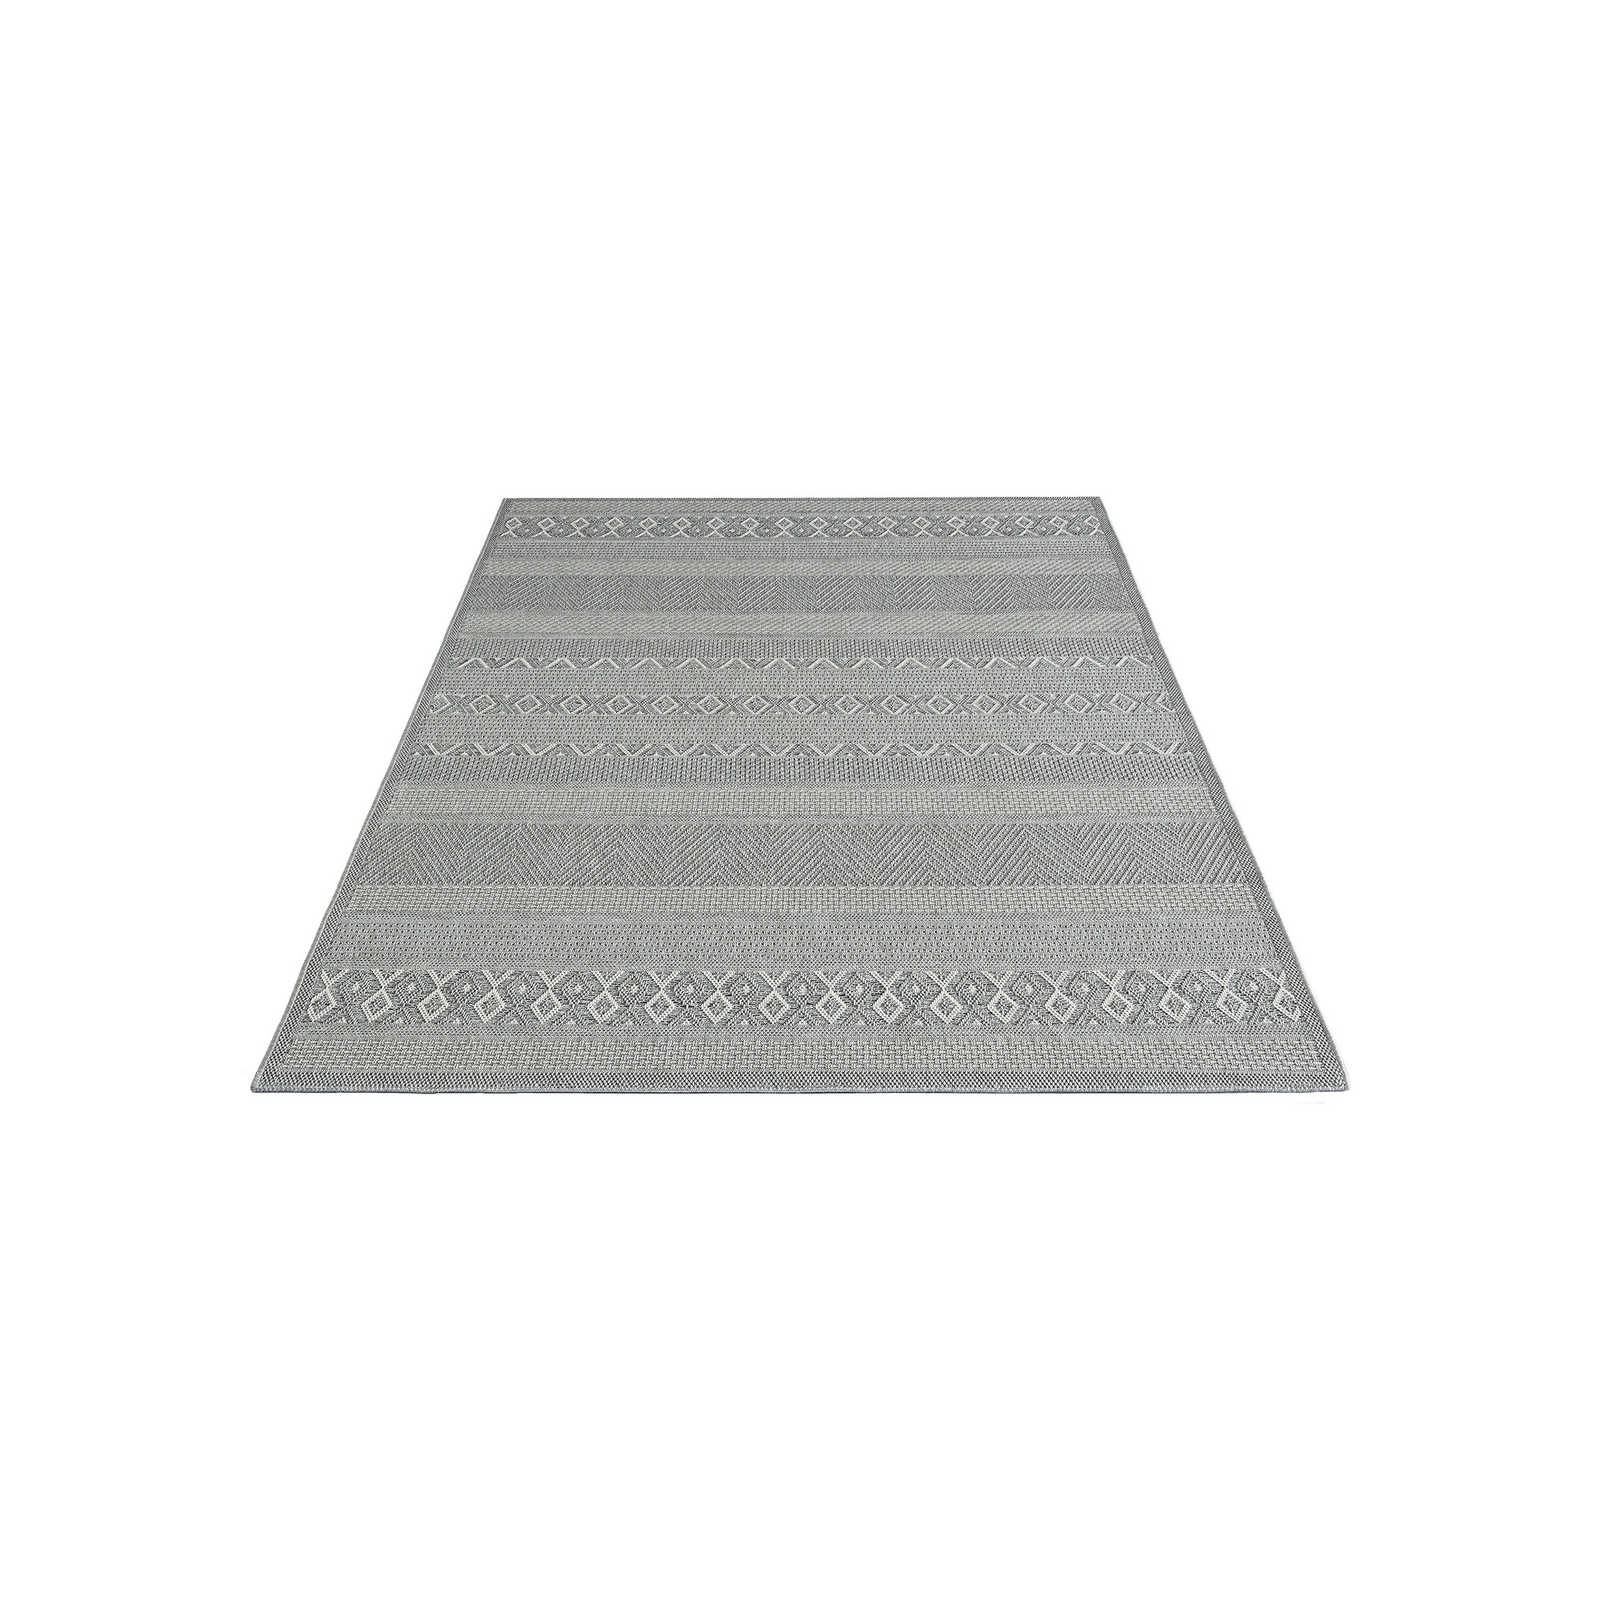 Tappeto da esterno a motivi semplici in grigio - 200 x 140 cm
